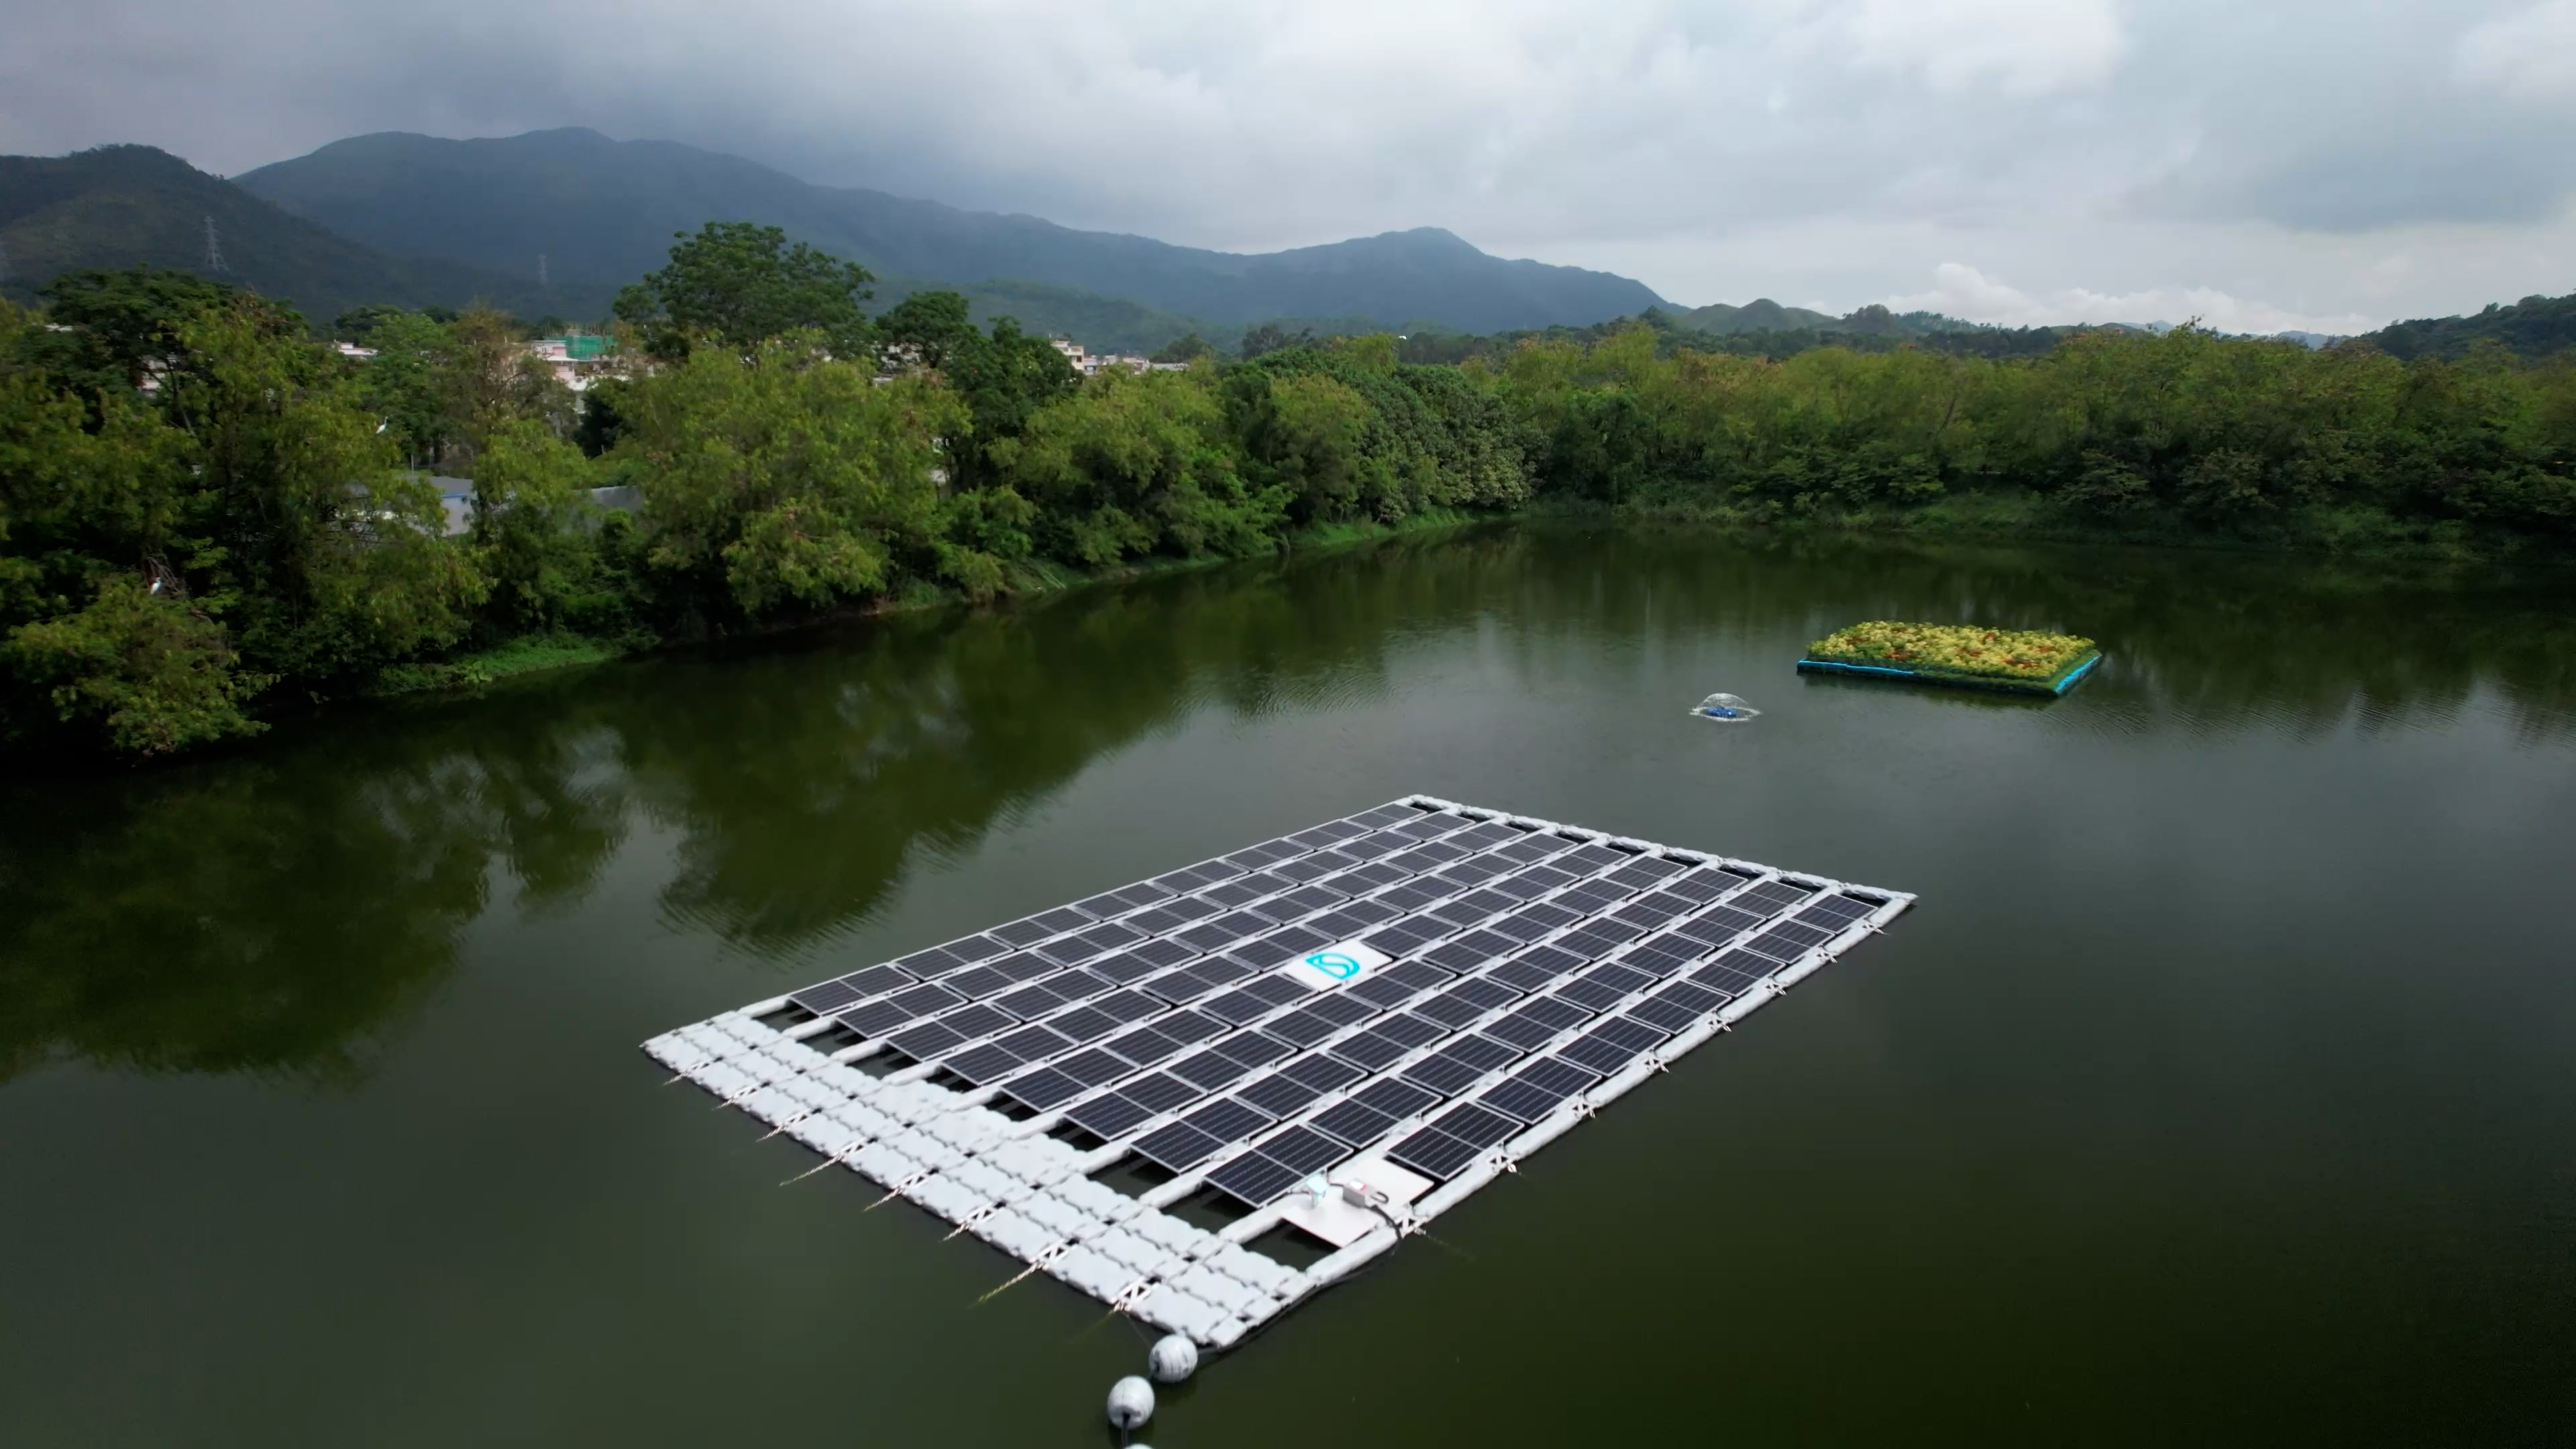 設於新田蓄洪池的浮式太陽能發電系統及生態浮島